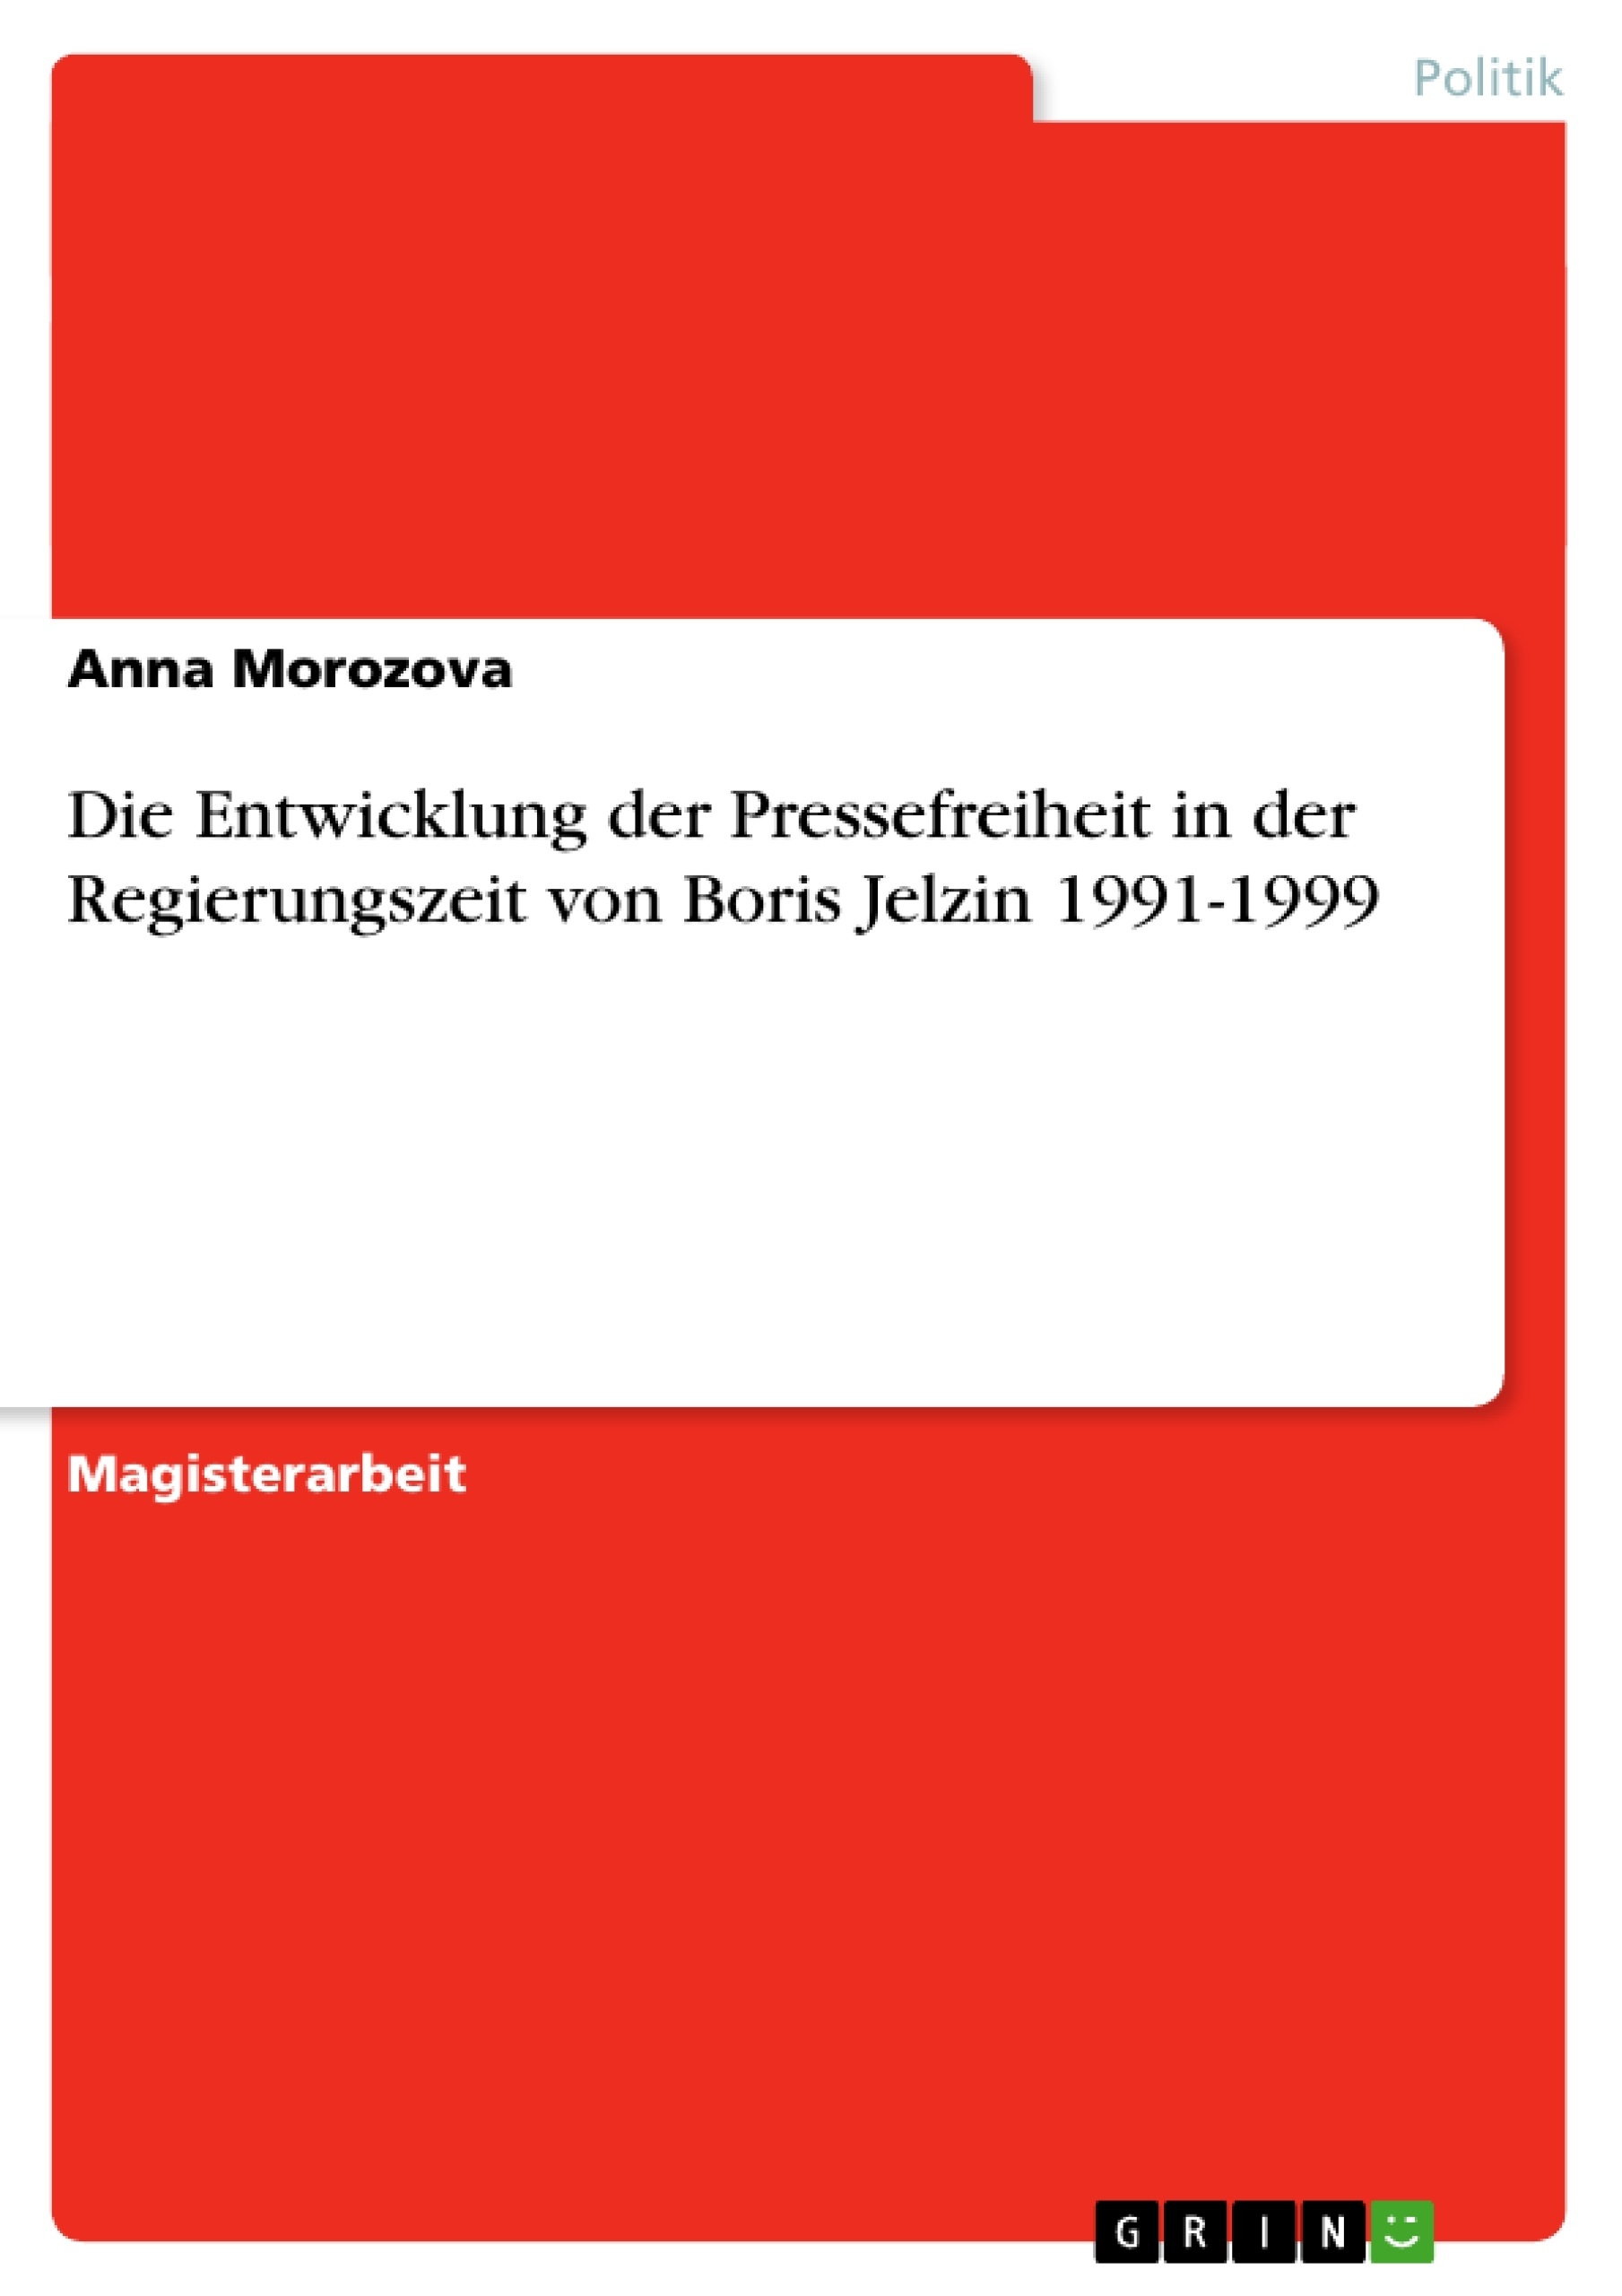 Titre: Die Entwicklung der Pressefreiheit in der Regierungszeit von Boris Jelzin 1991-1999